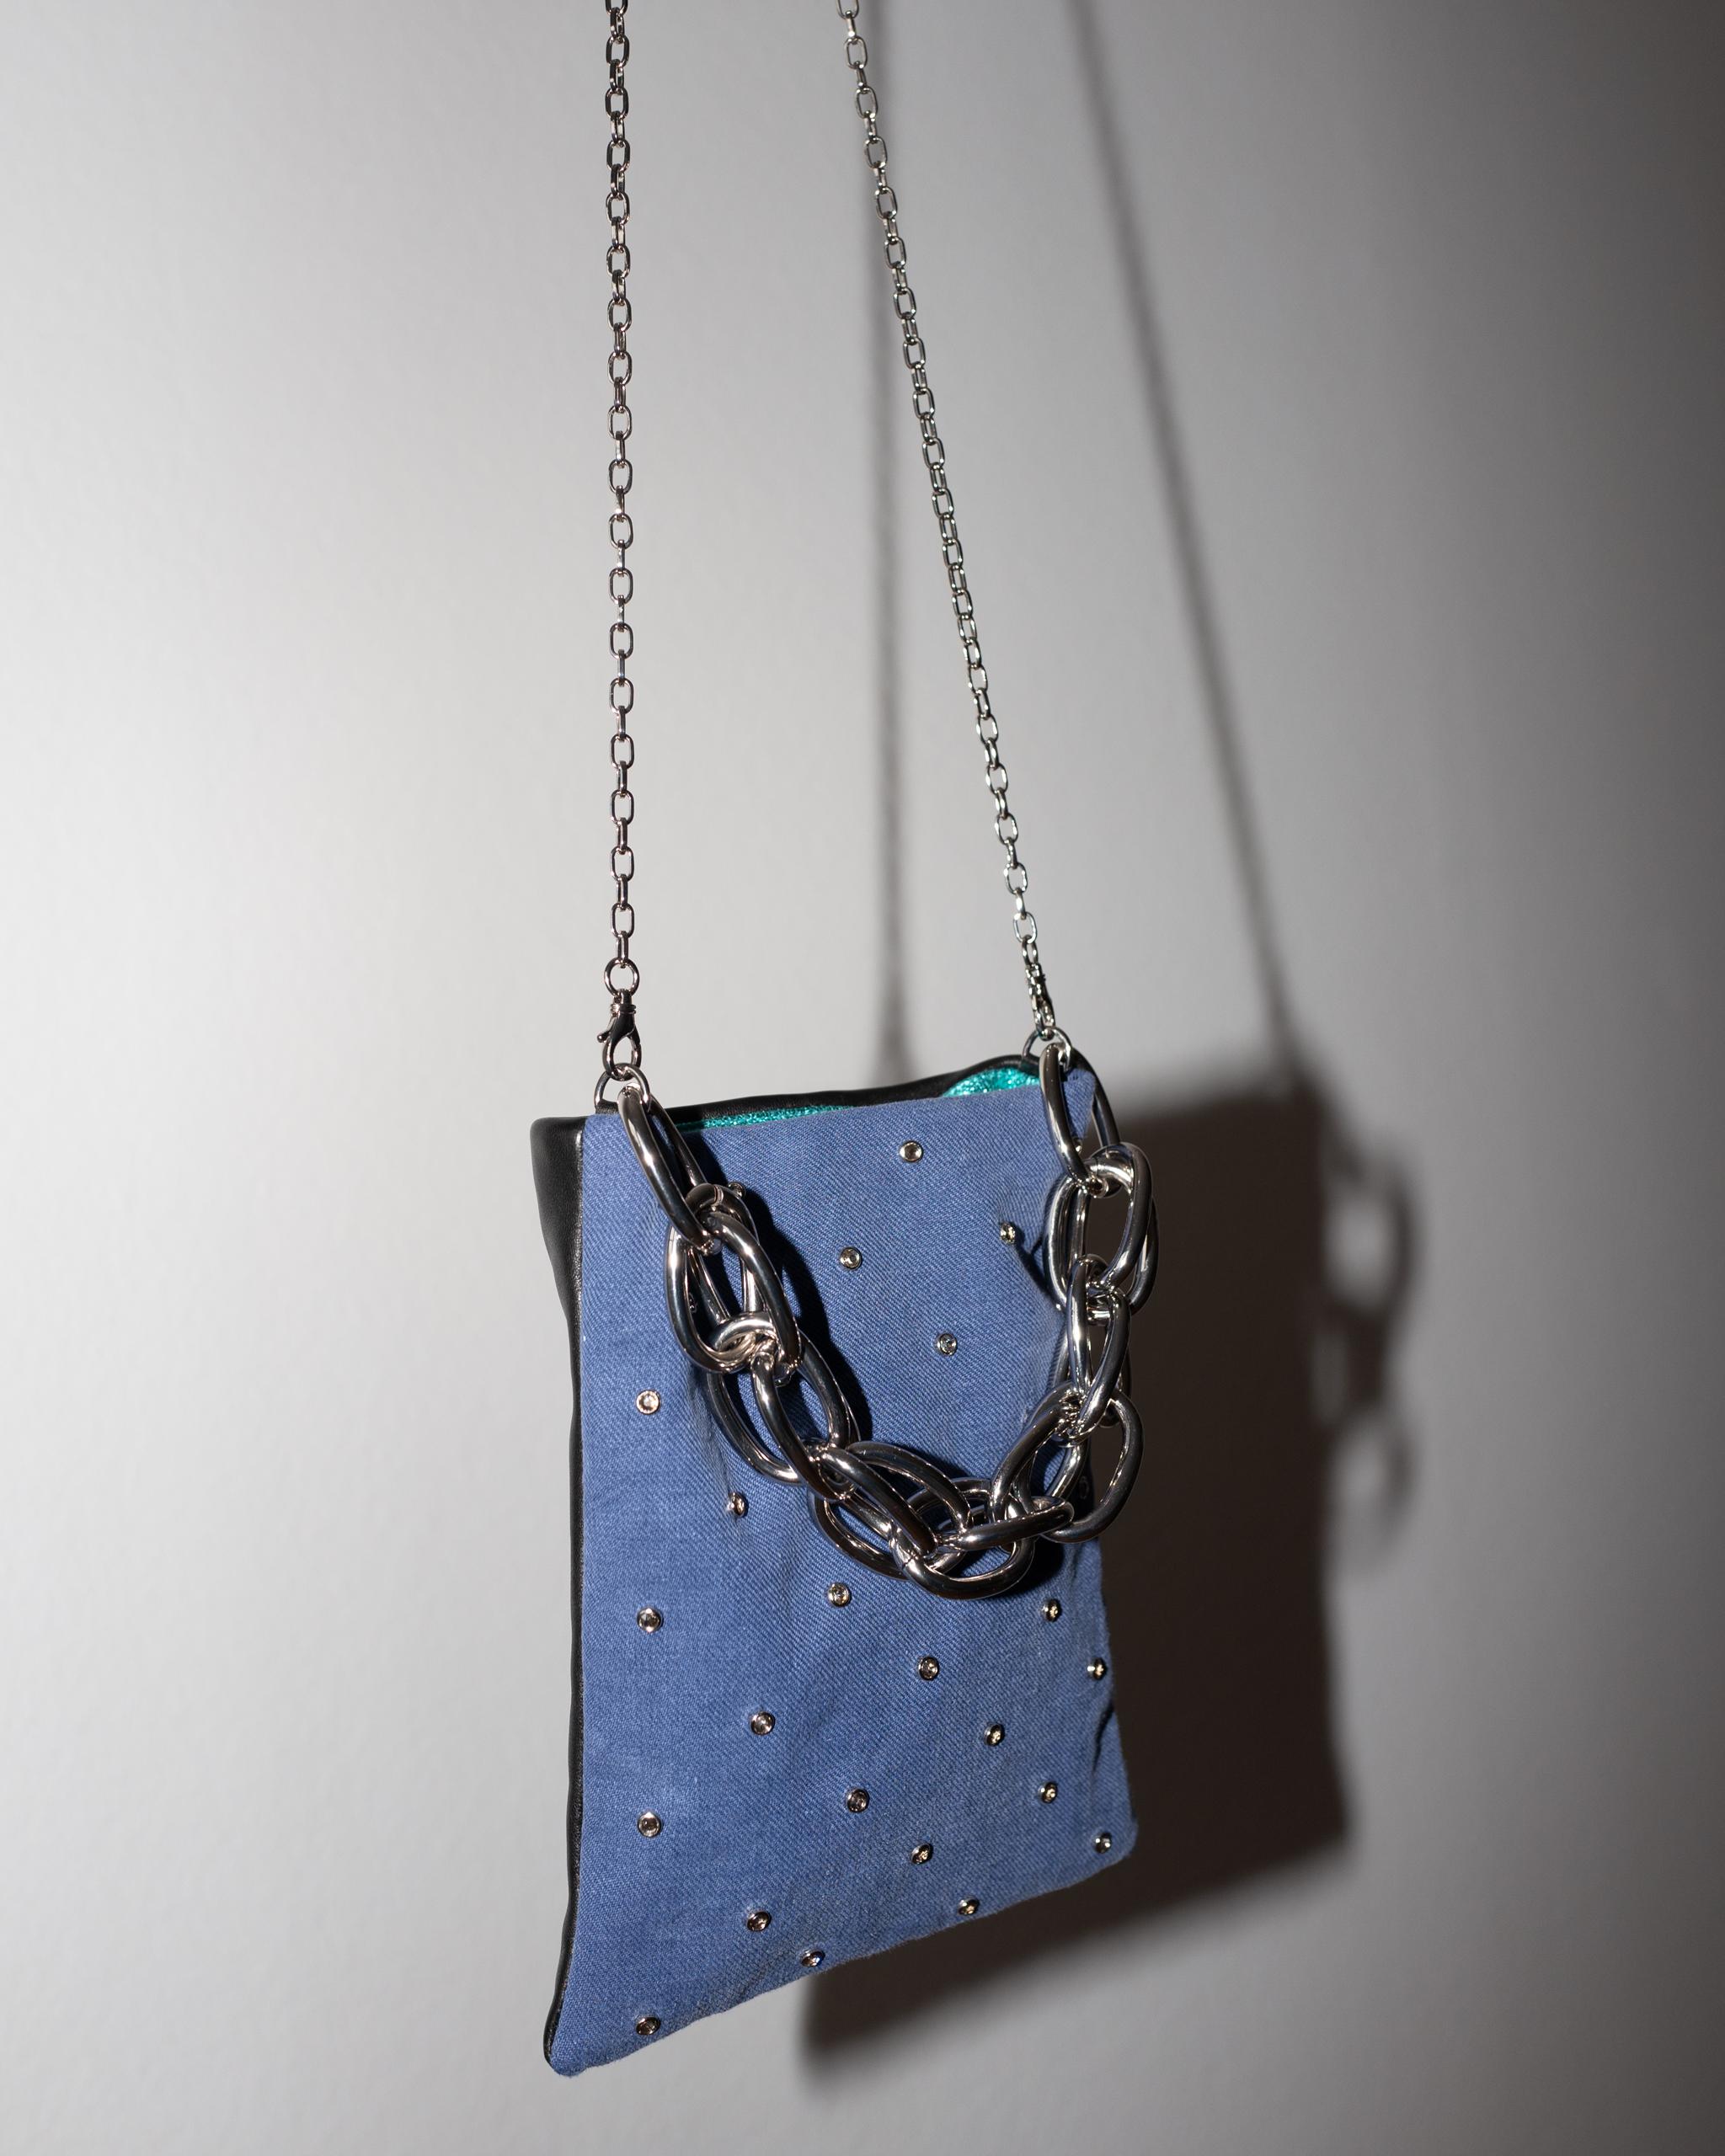 Crystal Embellished Blue Evening Shoulder Bag Black Leather Chunky Chain For Sale 4